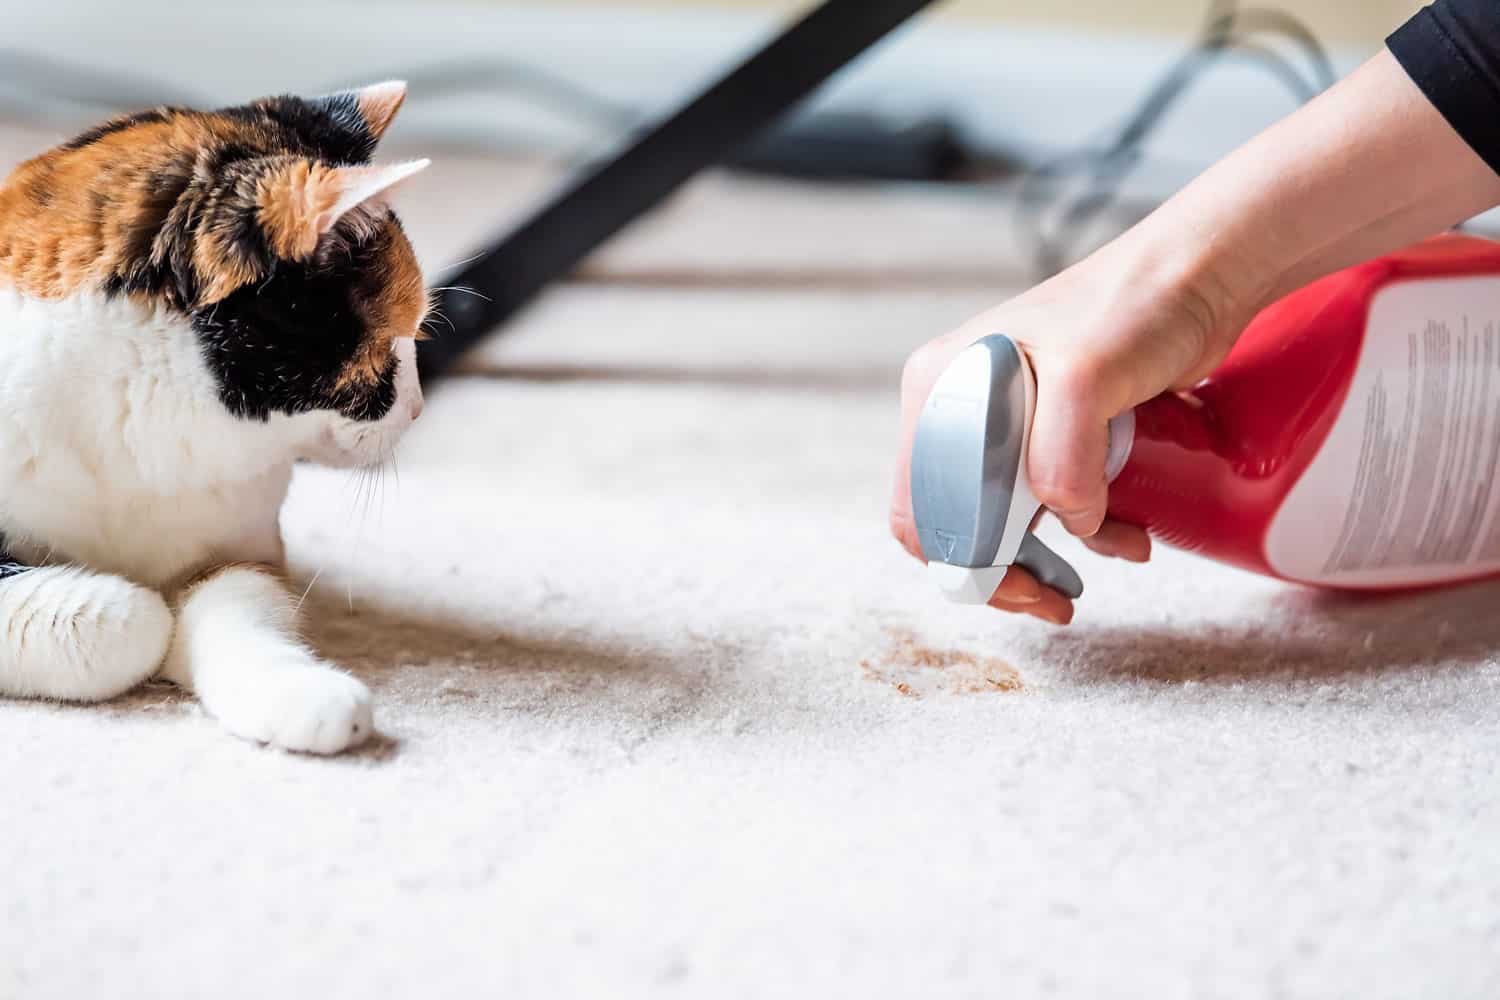 Cat spraying cat litter